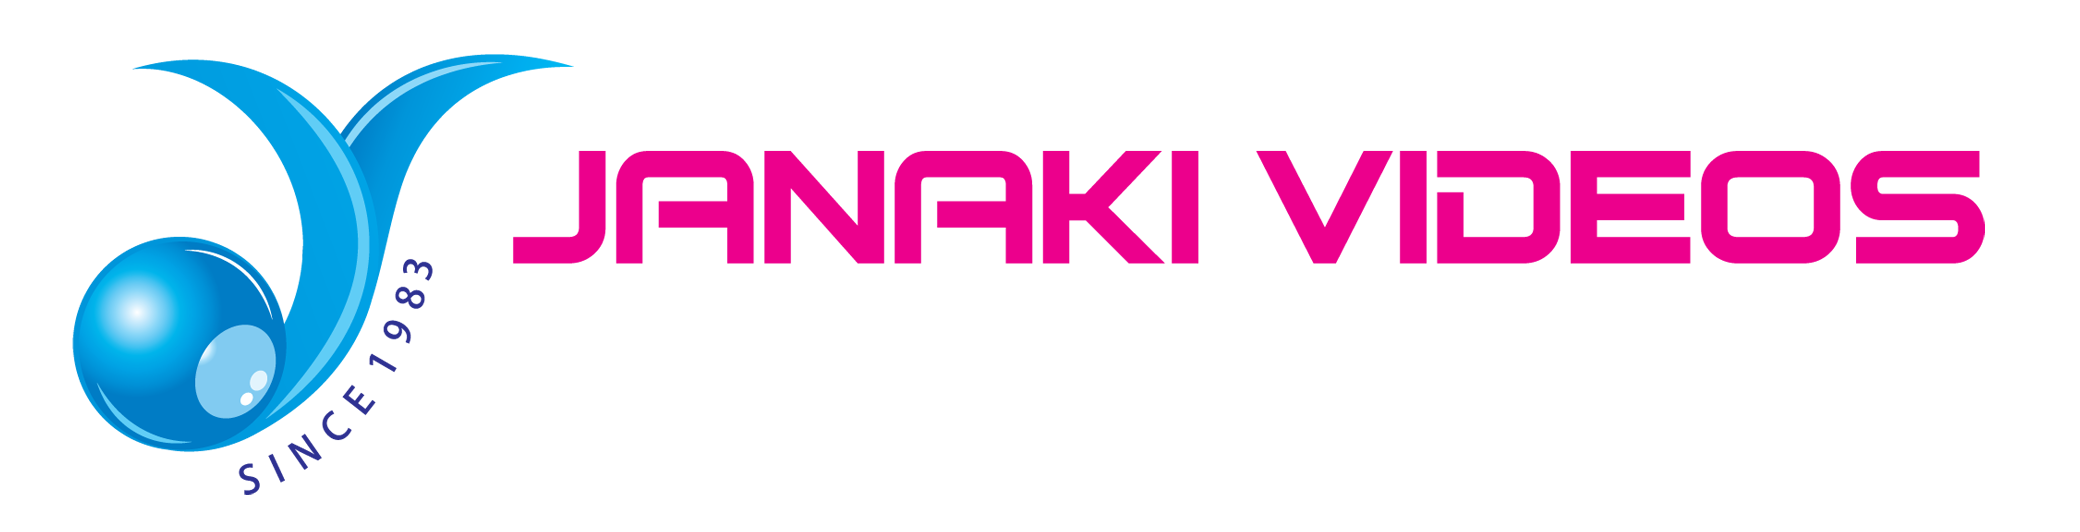 janaki videos_logo album